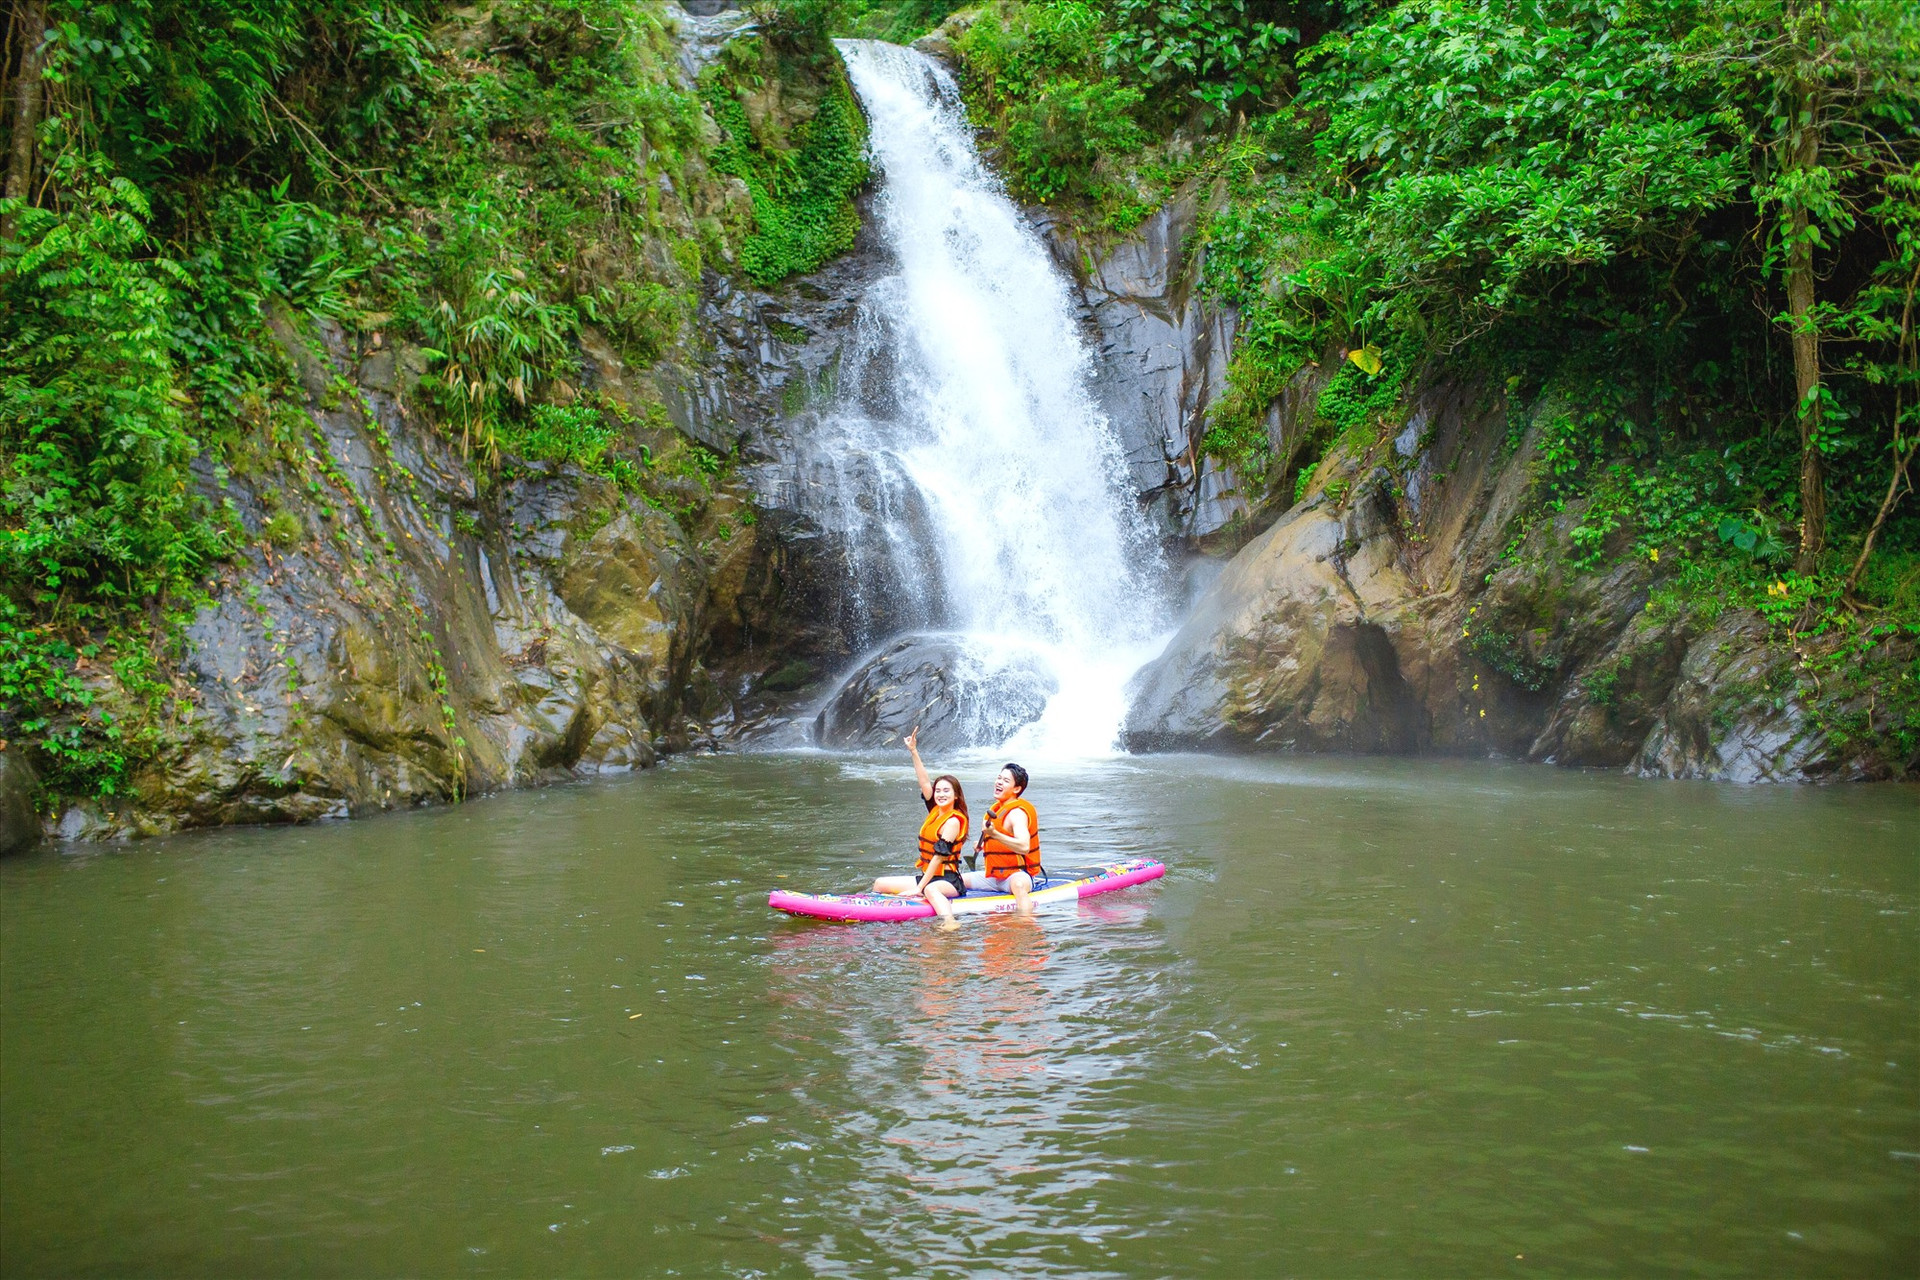 Khung cảnh một thác nước tự nhiên trong Khu du lịch sinh thái Cổng trời Đông Giang. Ảnh: CT